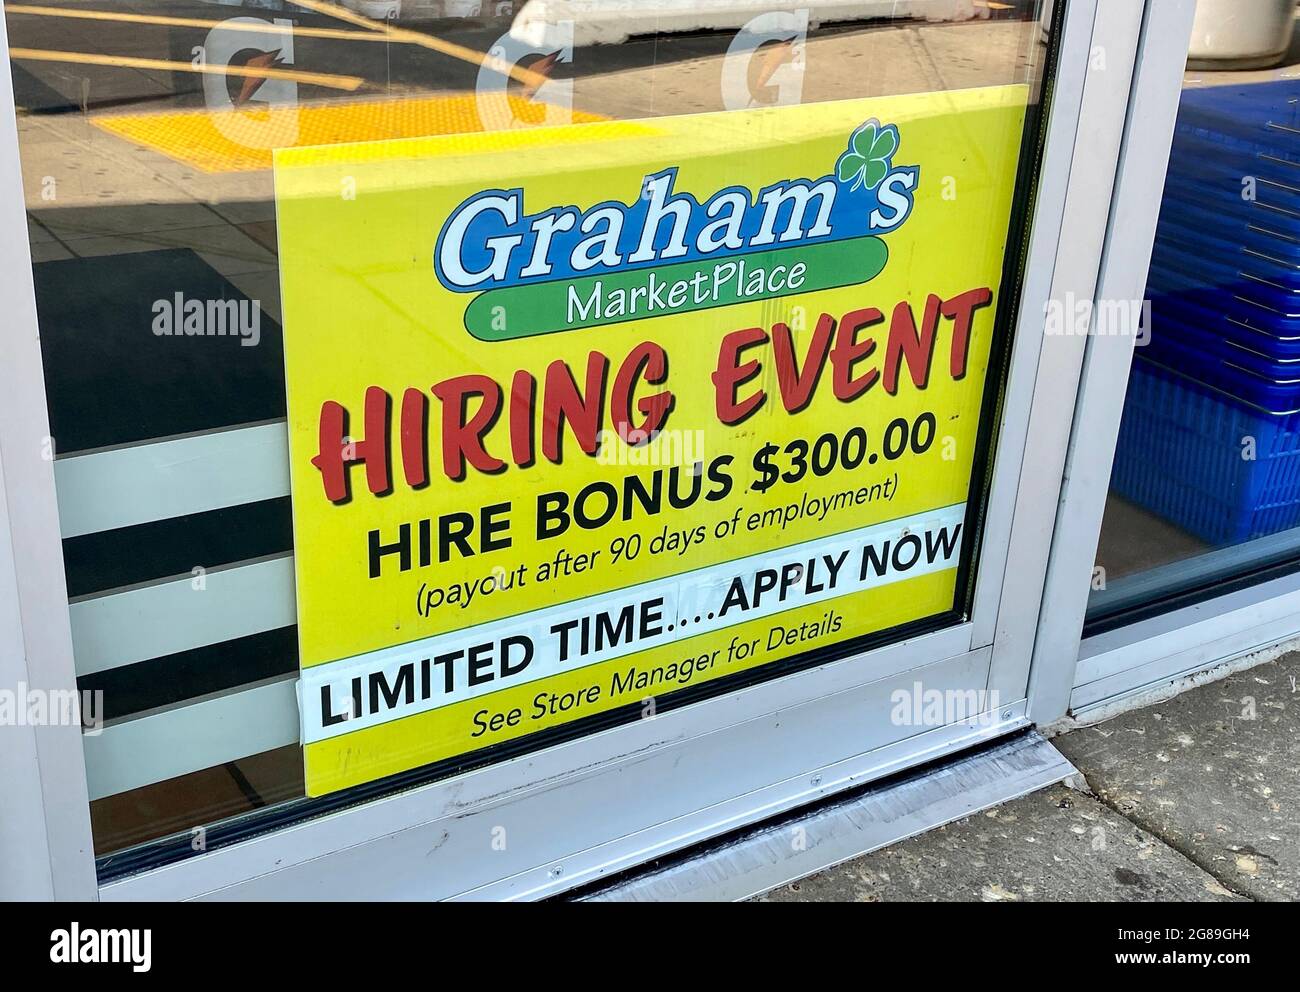 L'enseigne sur le marché de Graham fait la promotion d'un événement d'embauche avec une prime d'embauche. Les entreprises ont du mal à trouver du personnel à mesure que la pandémie se apaise. Banque D'Images